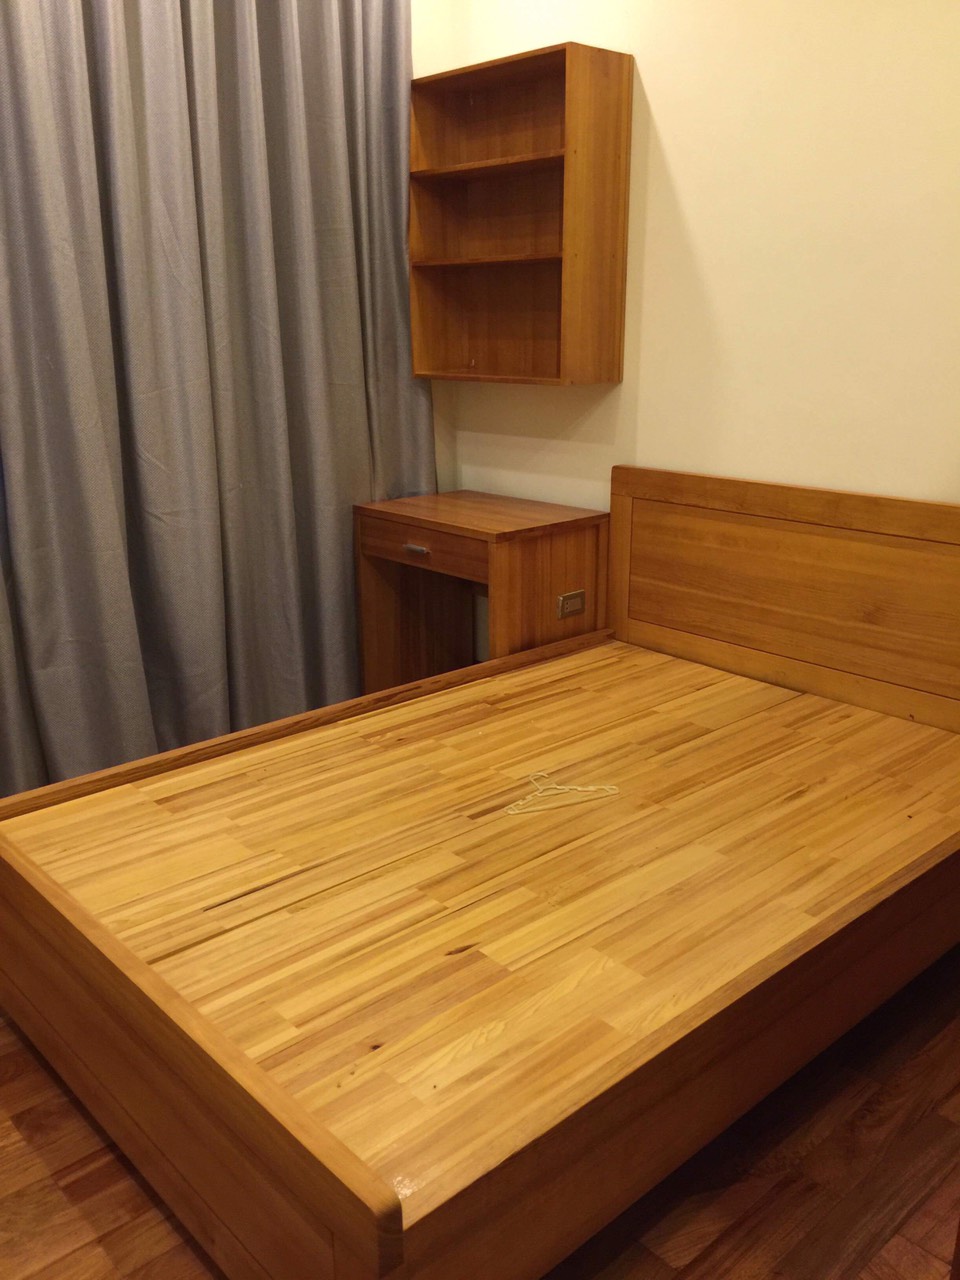 Nội thất phòng ngủ gỗ tự nhiên